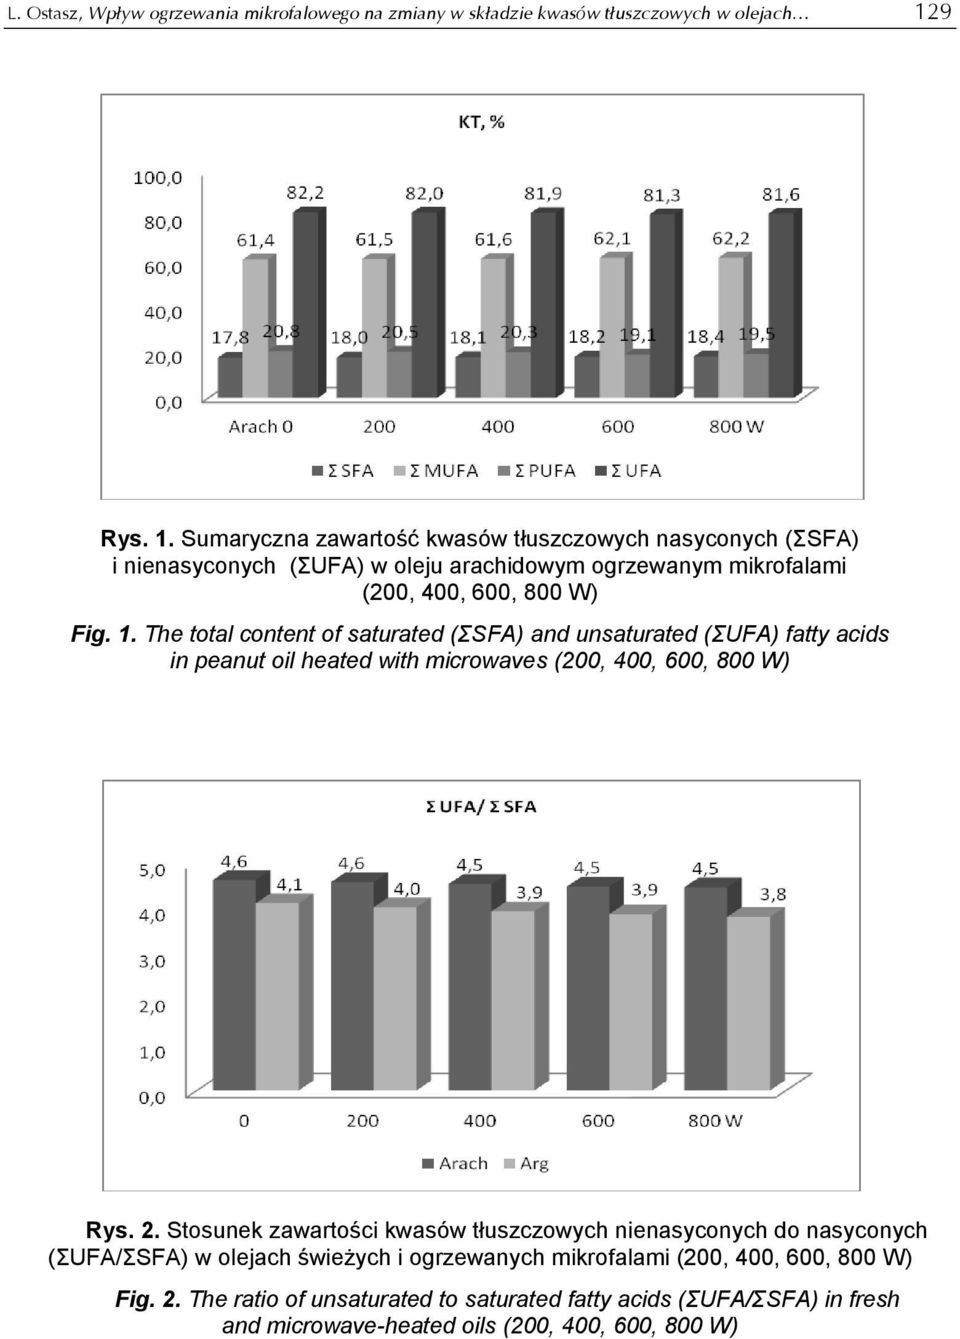 2. Stosunek zawartości kwasów tłuszczowych nienasyconych do nasyconych (ΣUFA/ΣSFA) w olejach świeżych i ogrzewanych mikrofalami (200, 400, 600, 800 W) Fig. 2.